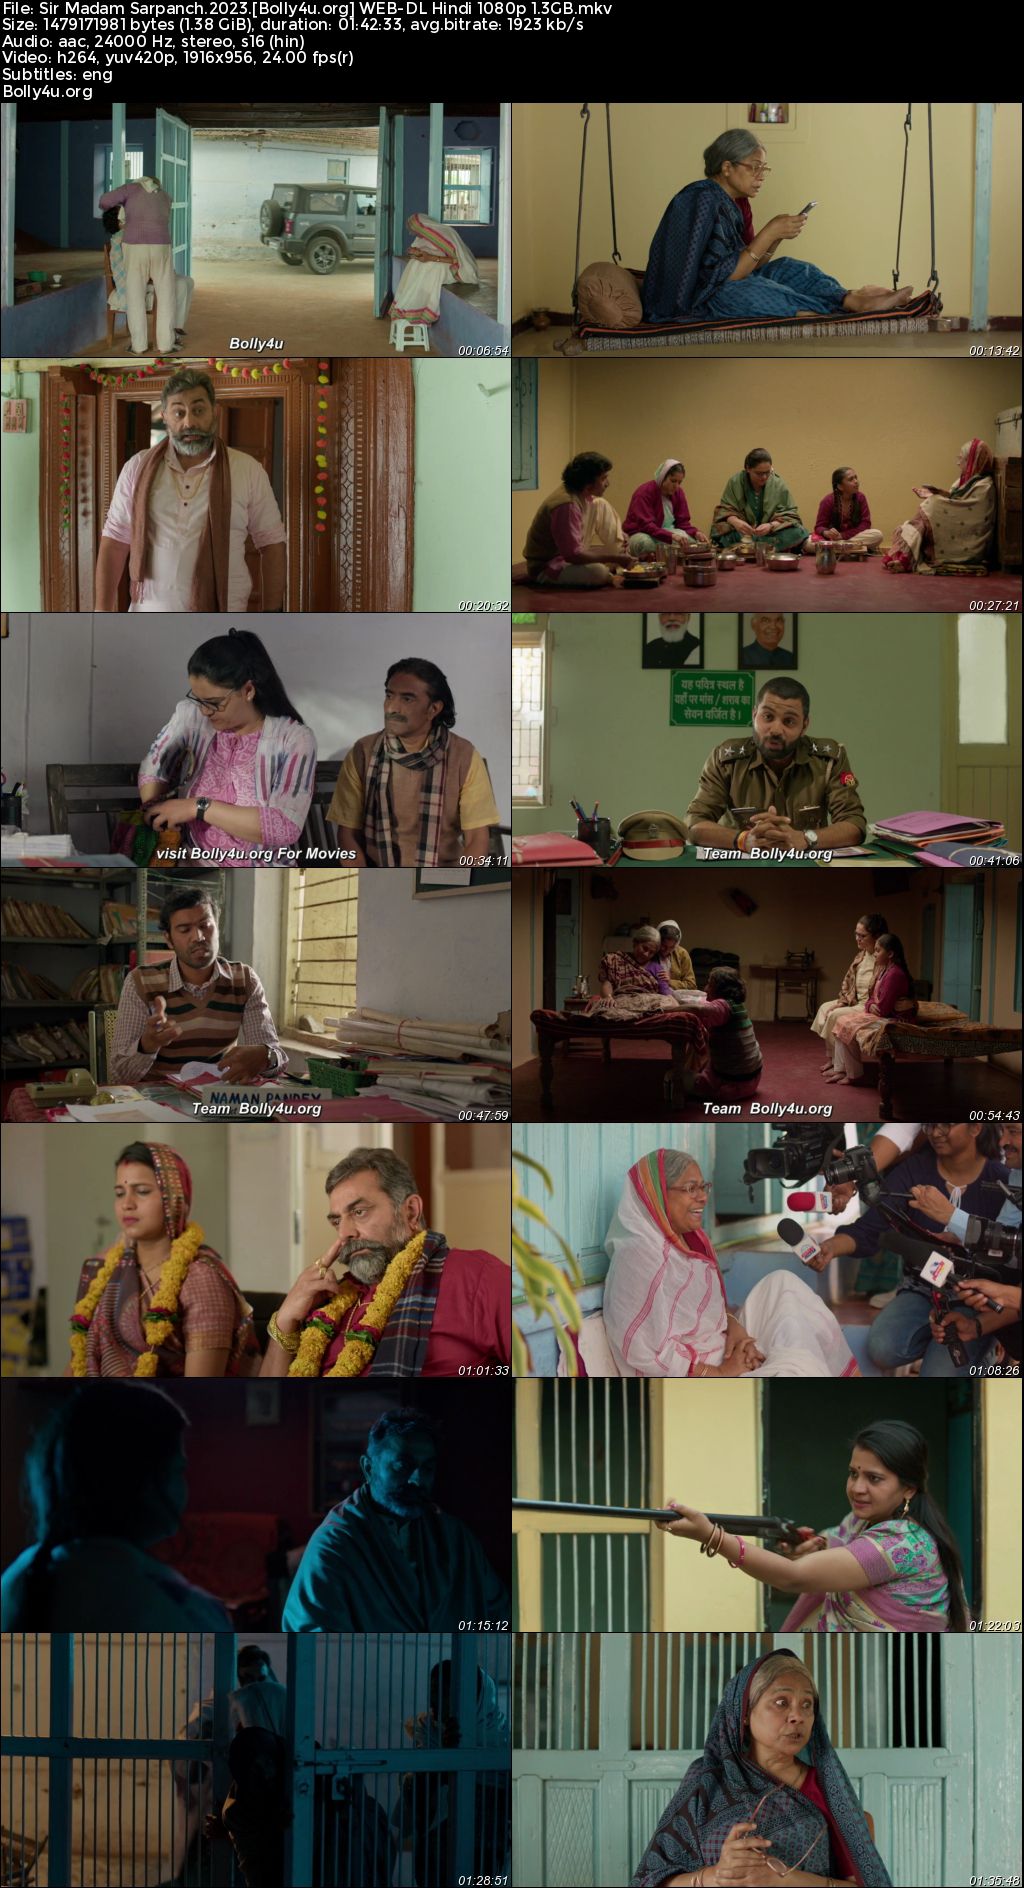 Sir Madam Sarpanch 2023 WEB-DL Hindi Full Movie Download 1080p 720p 480p